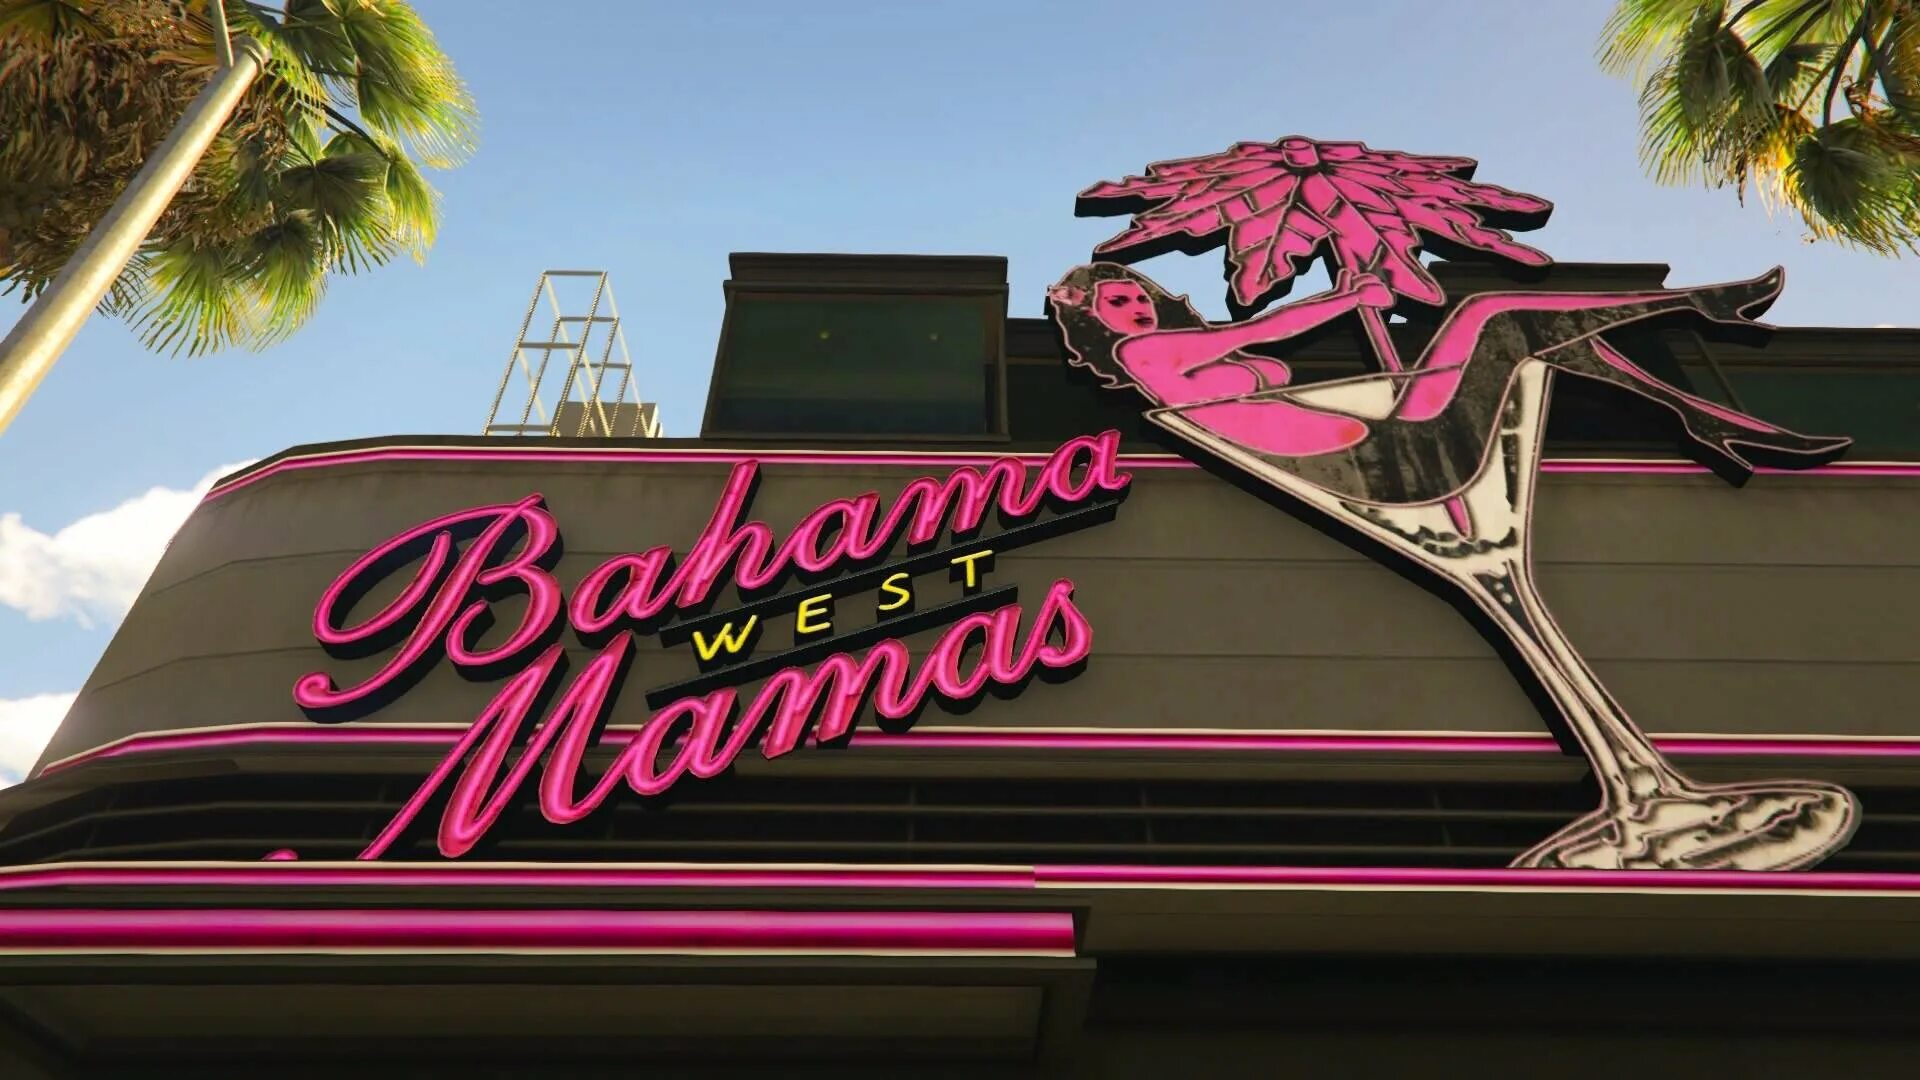 Bahama mama West gta5. Bahama mamas в GTA 5. Клуб Bahama mamas ГТА 5. Клуб Bahama mamas GTA 5 Rp. Вывеска гта